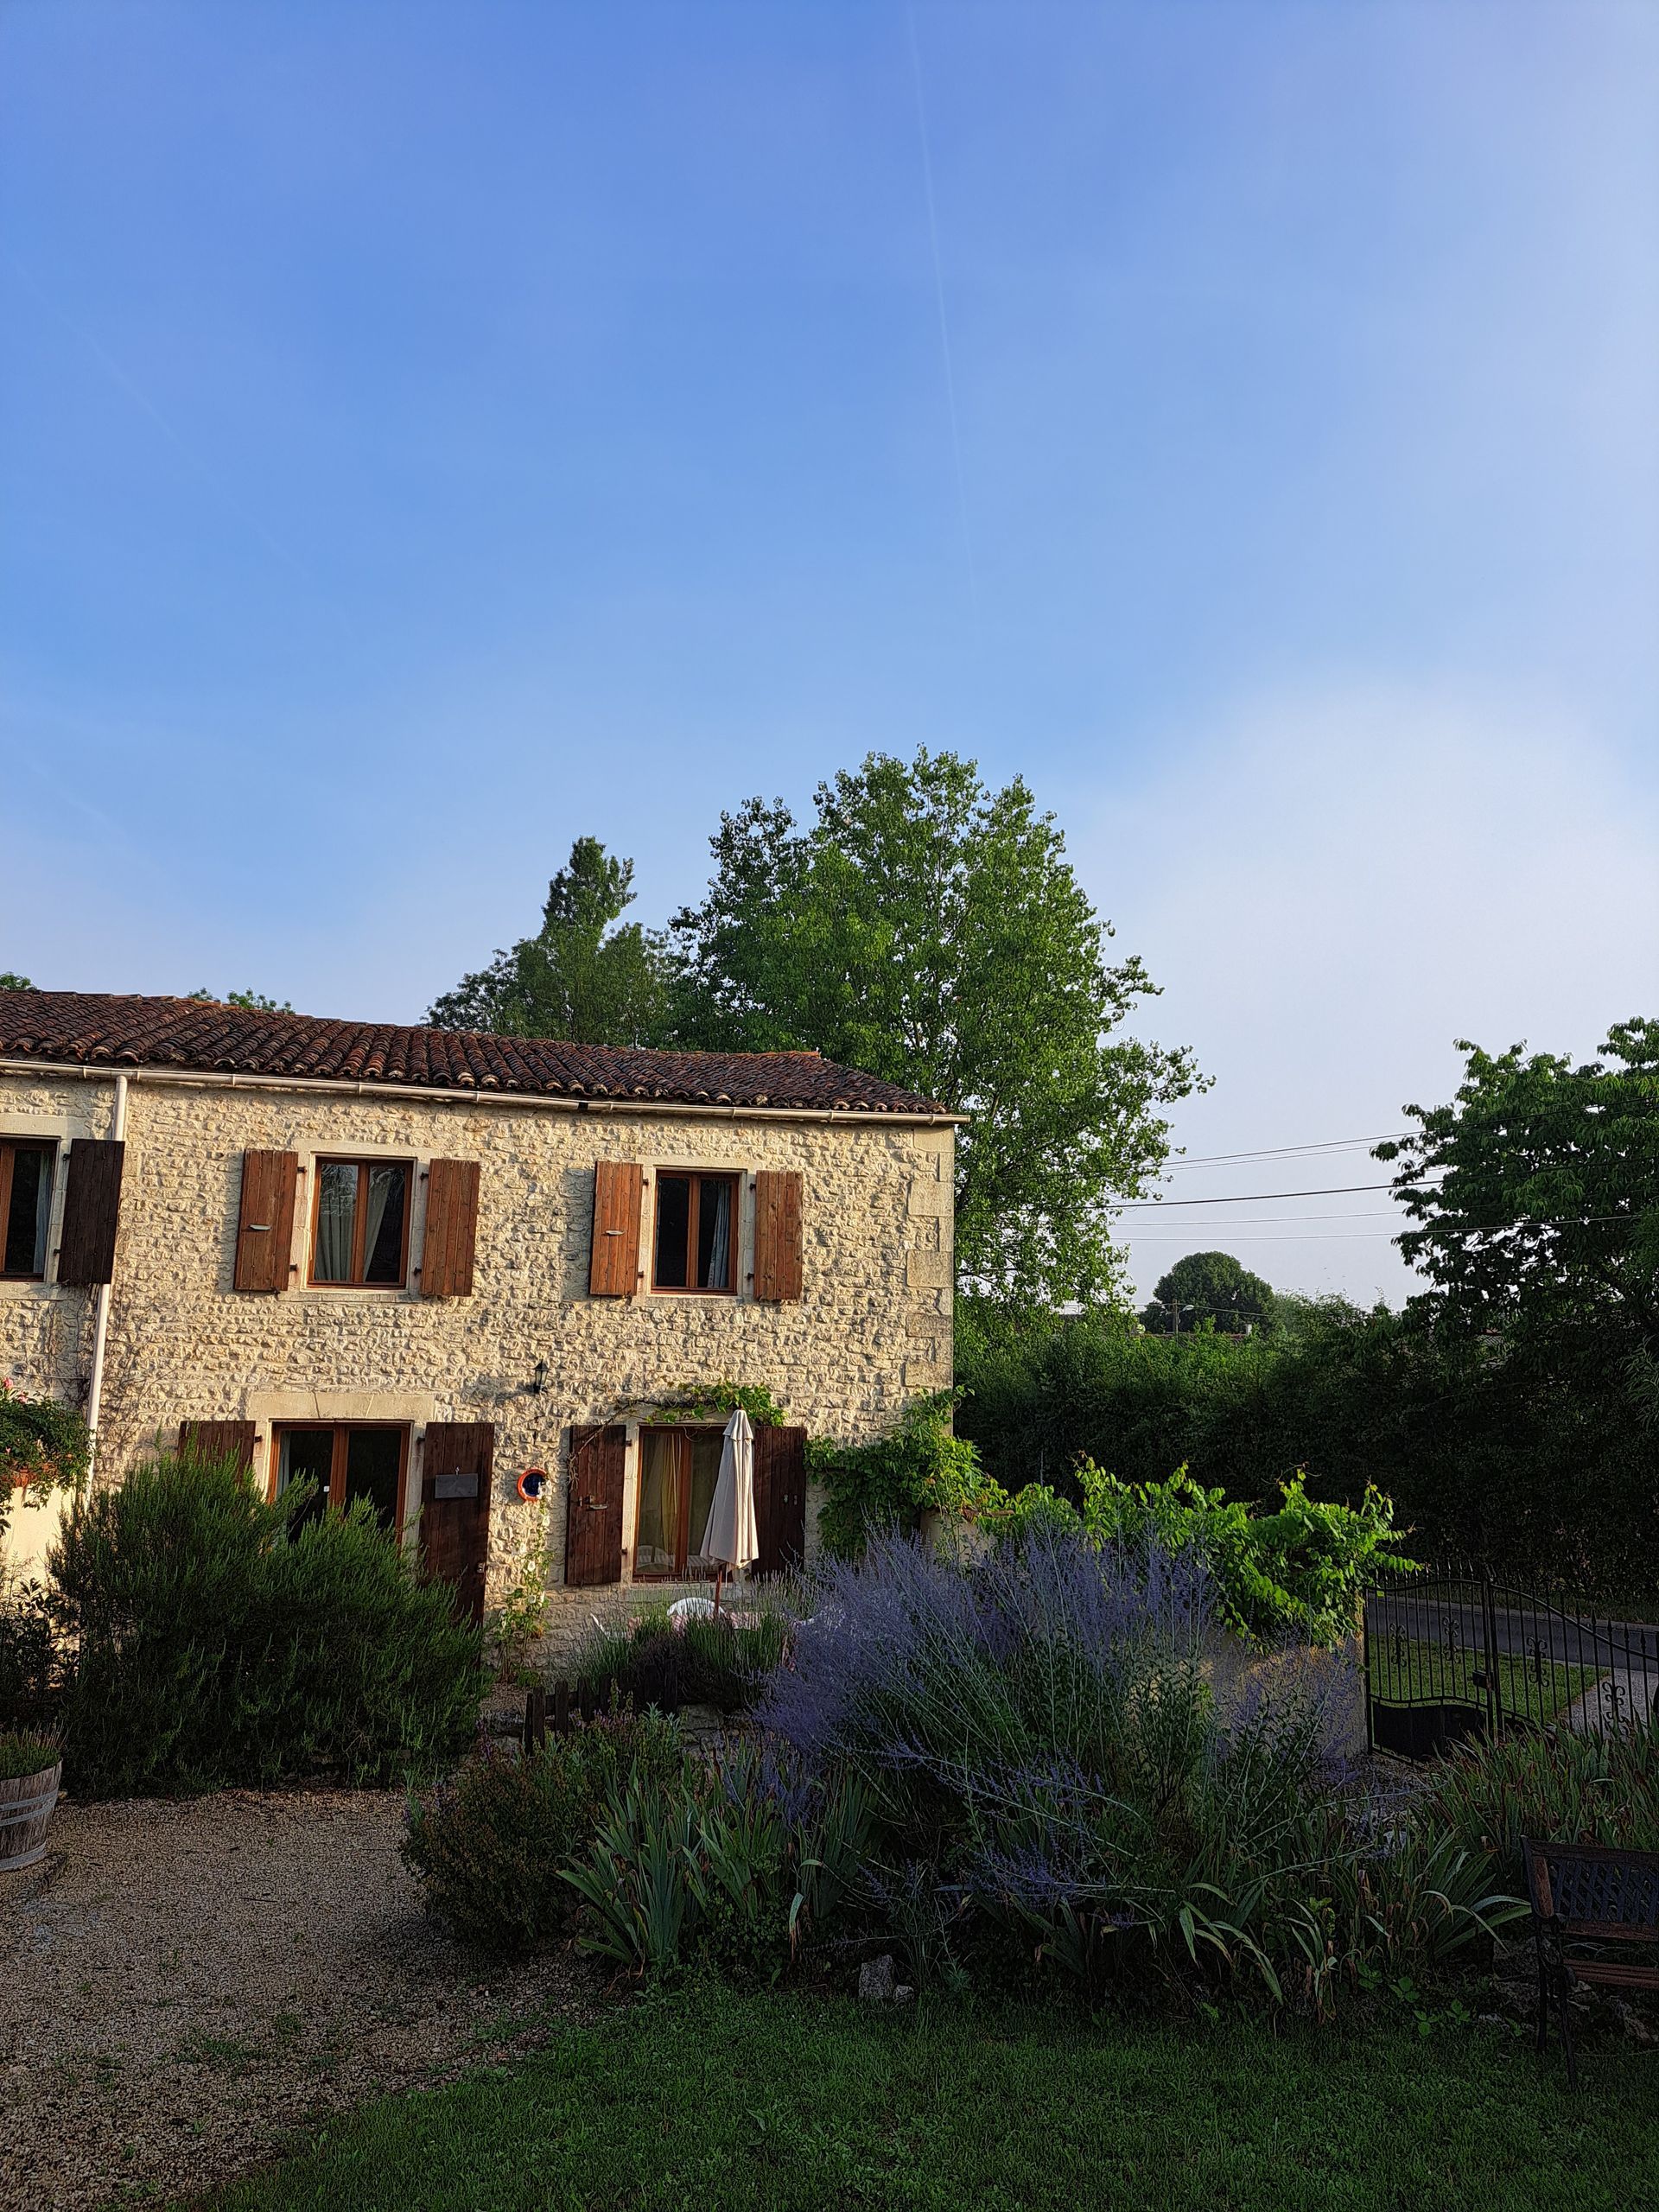 stenen huisje in Frankrijk met pannendak en houten luiken bruin gekleurd, lavendel op de voorgrond